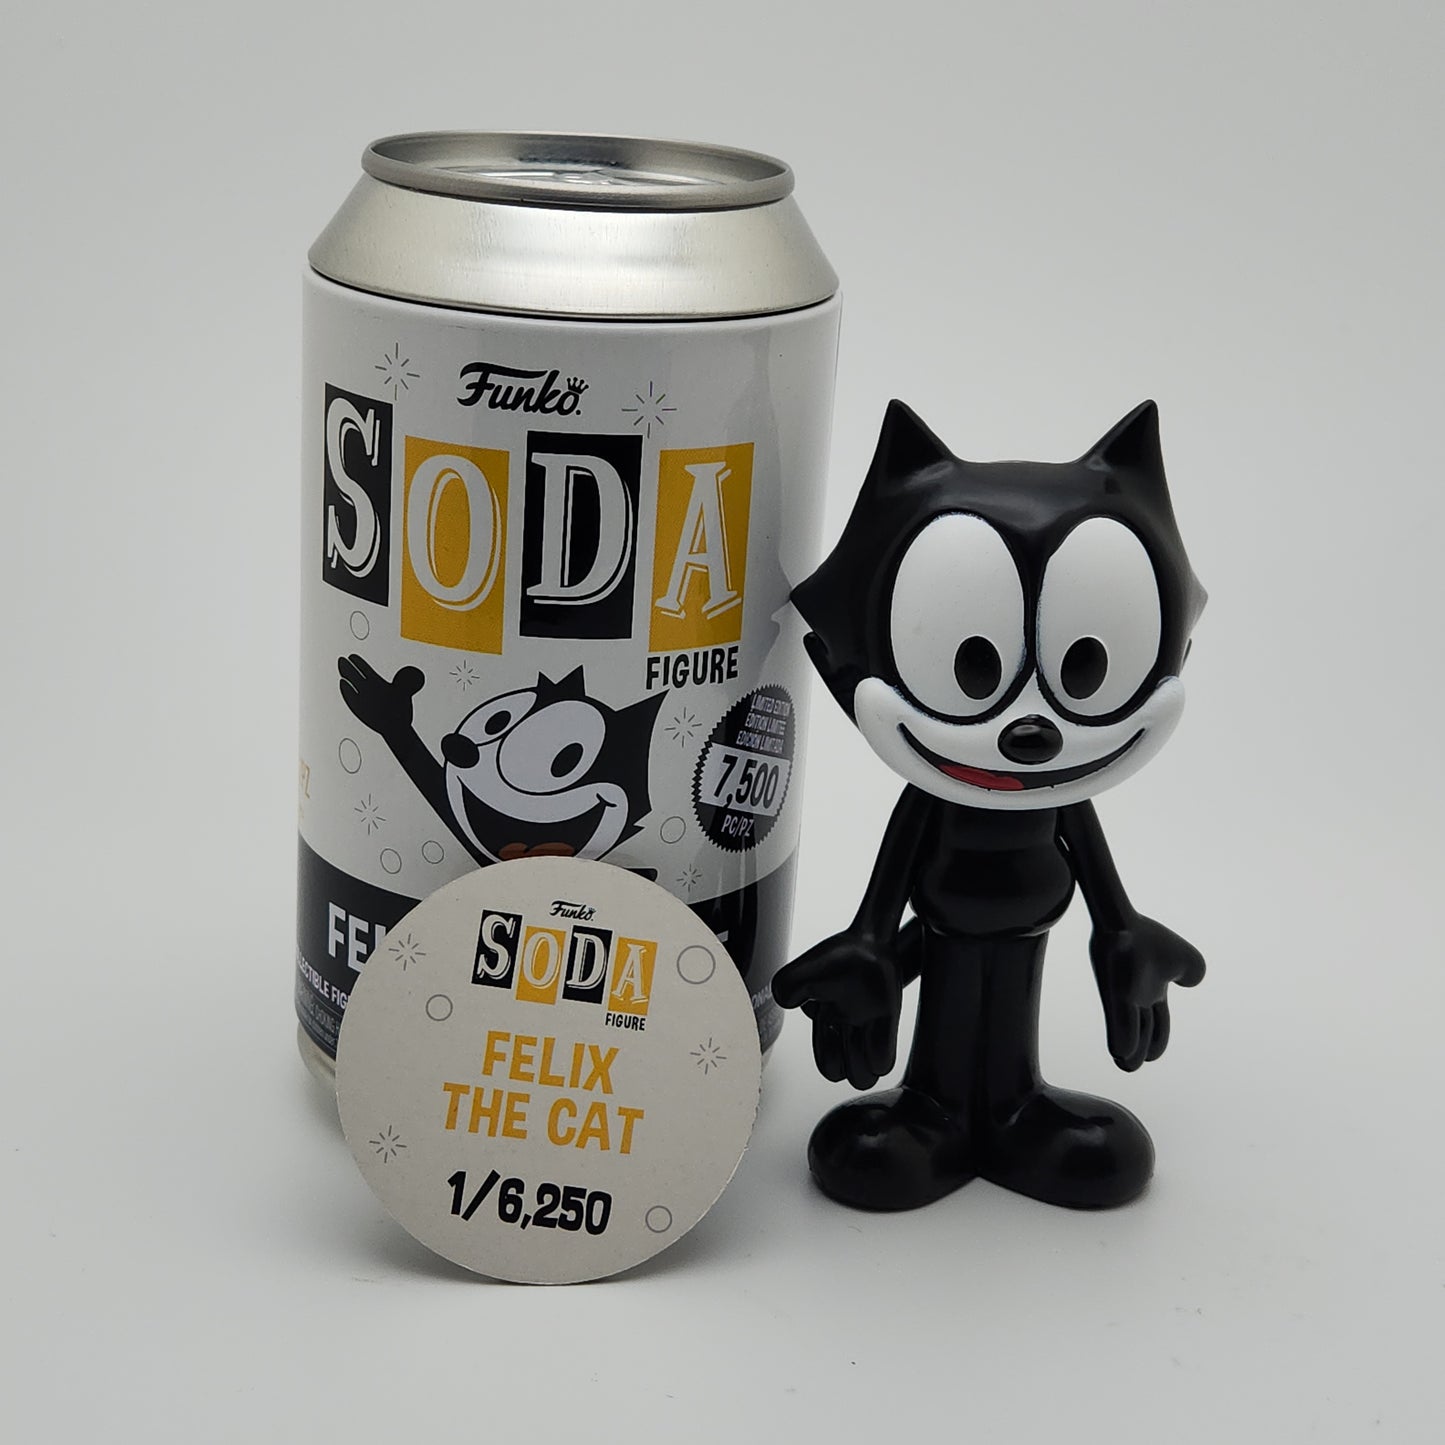 Funko Soda- Felix the Cat